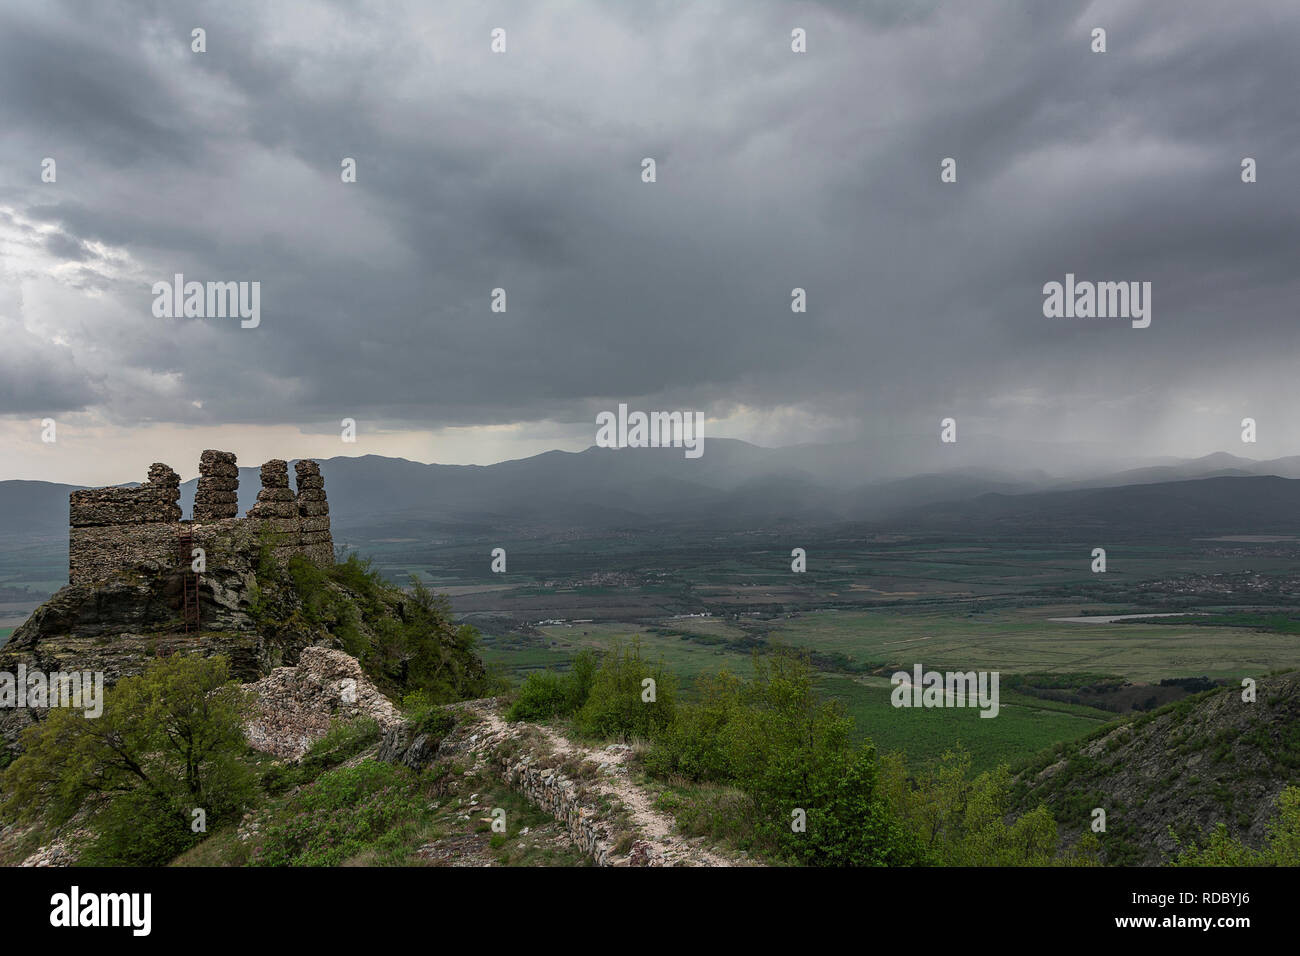 Alte Festung in der Nähe von anevo Dorf in Bulgarien Stockfoto